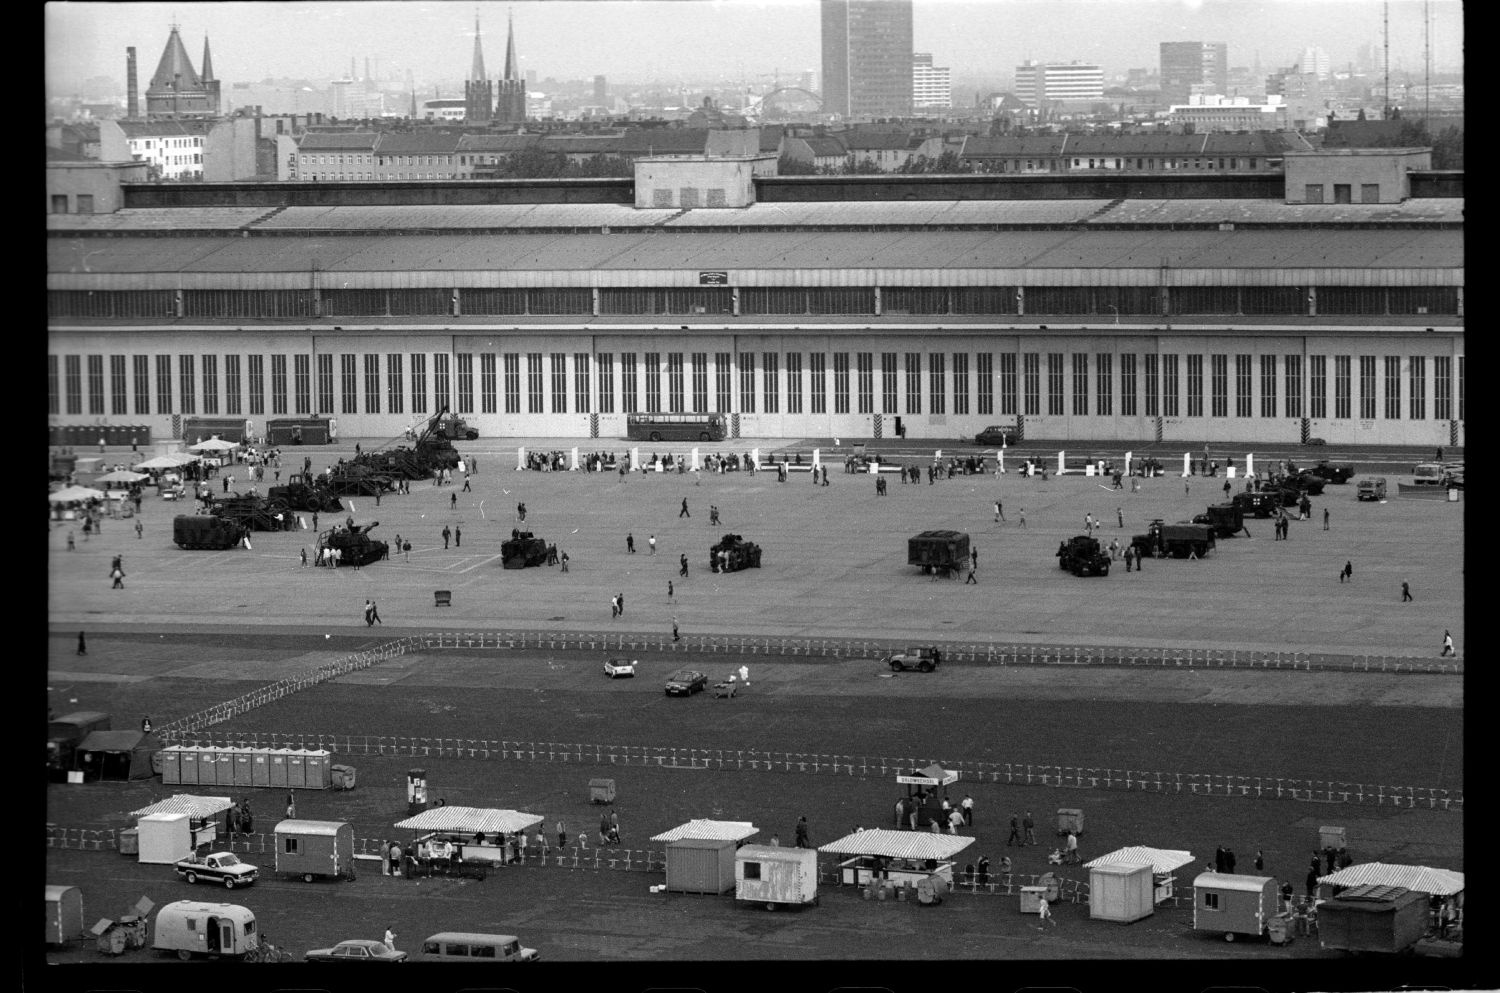 S/w-Fotografie: Tag der offenen Tür auf der Tempelhof Air Base in Berlin-Tempelhof